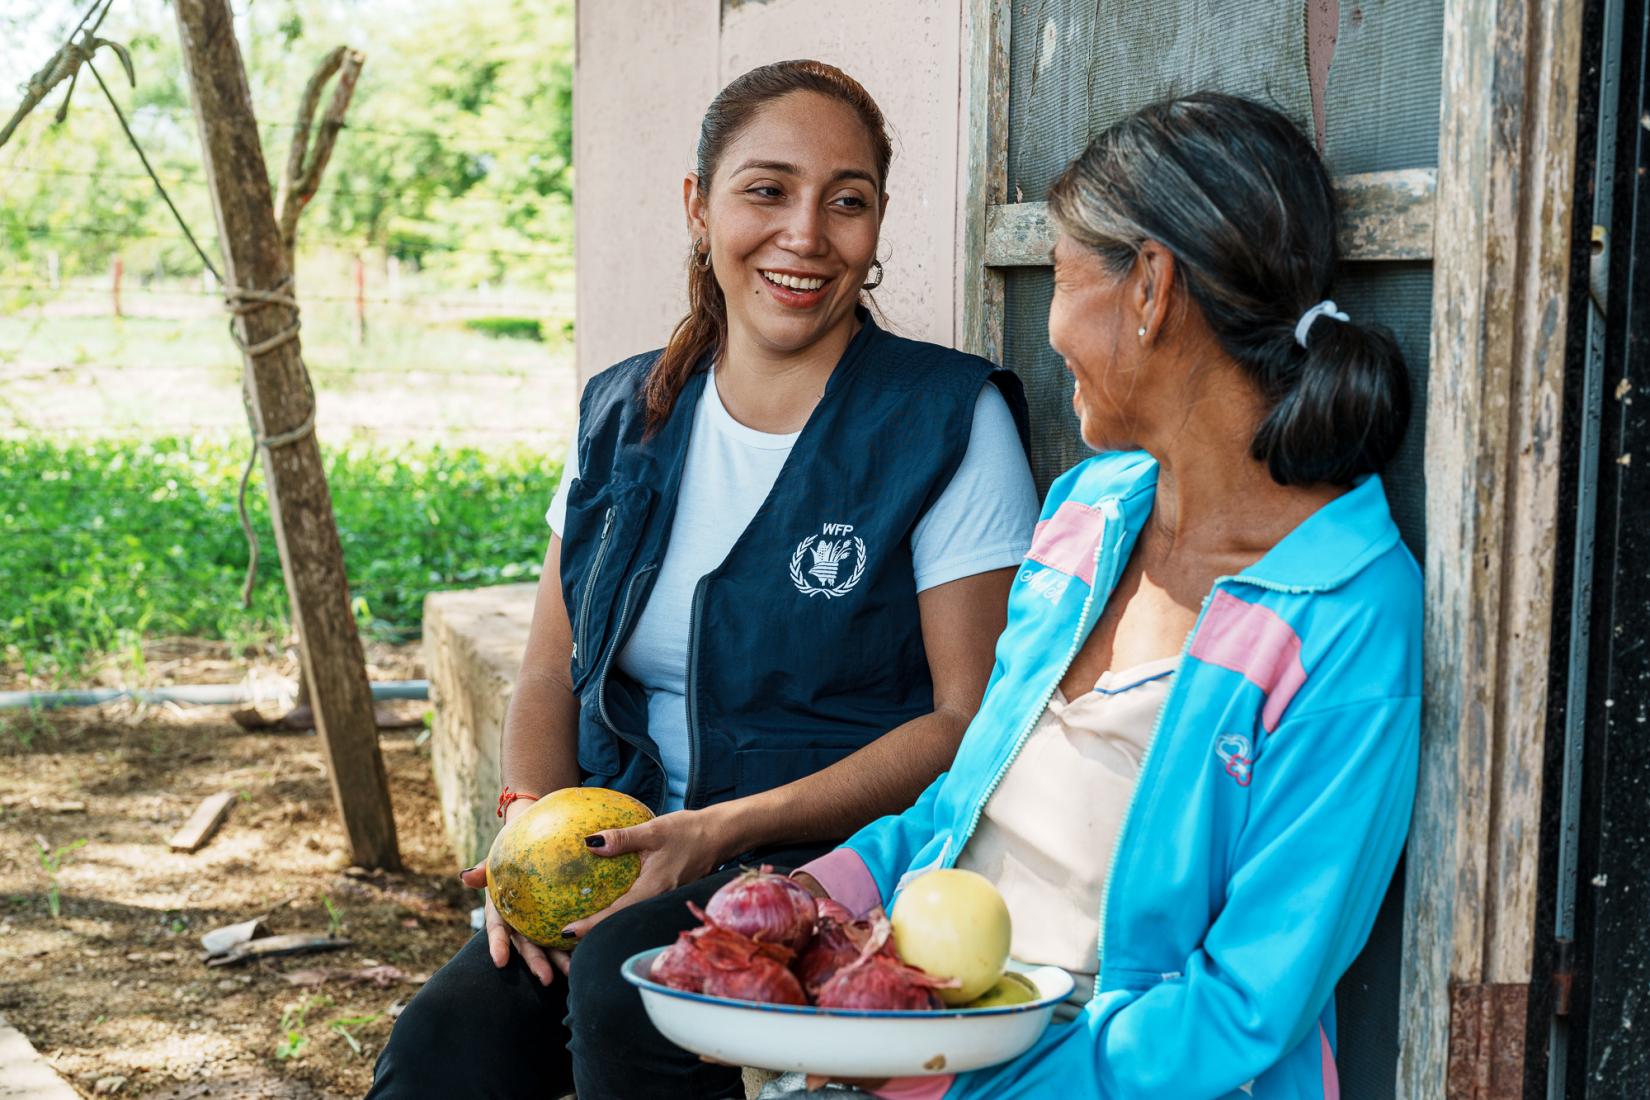 Trabajadora del Programa Mundial de Alimentos entregando comida como parte del proyecto de comidas escolares a una mujer que parece pertenecer a la institución. Ambas se encuentran sentadas, una la mira a la otra con una sonrisa y un bowl de frutas en sus manos.